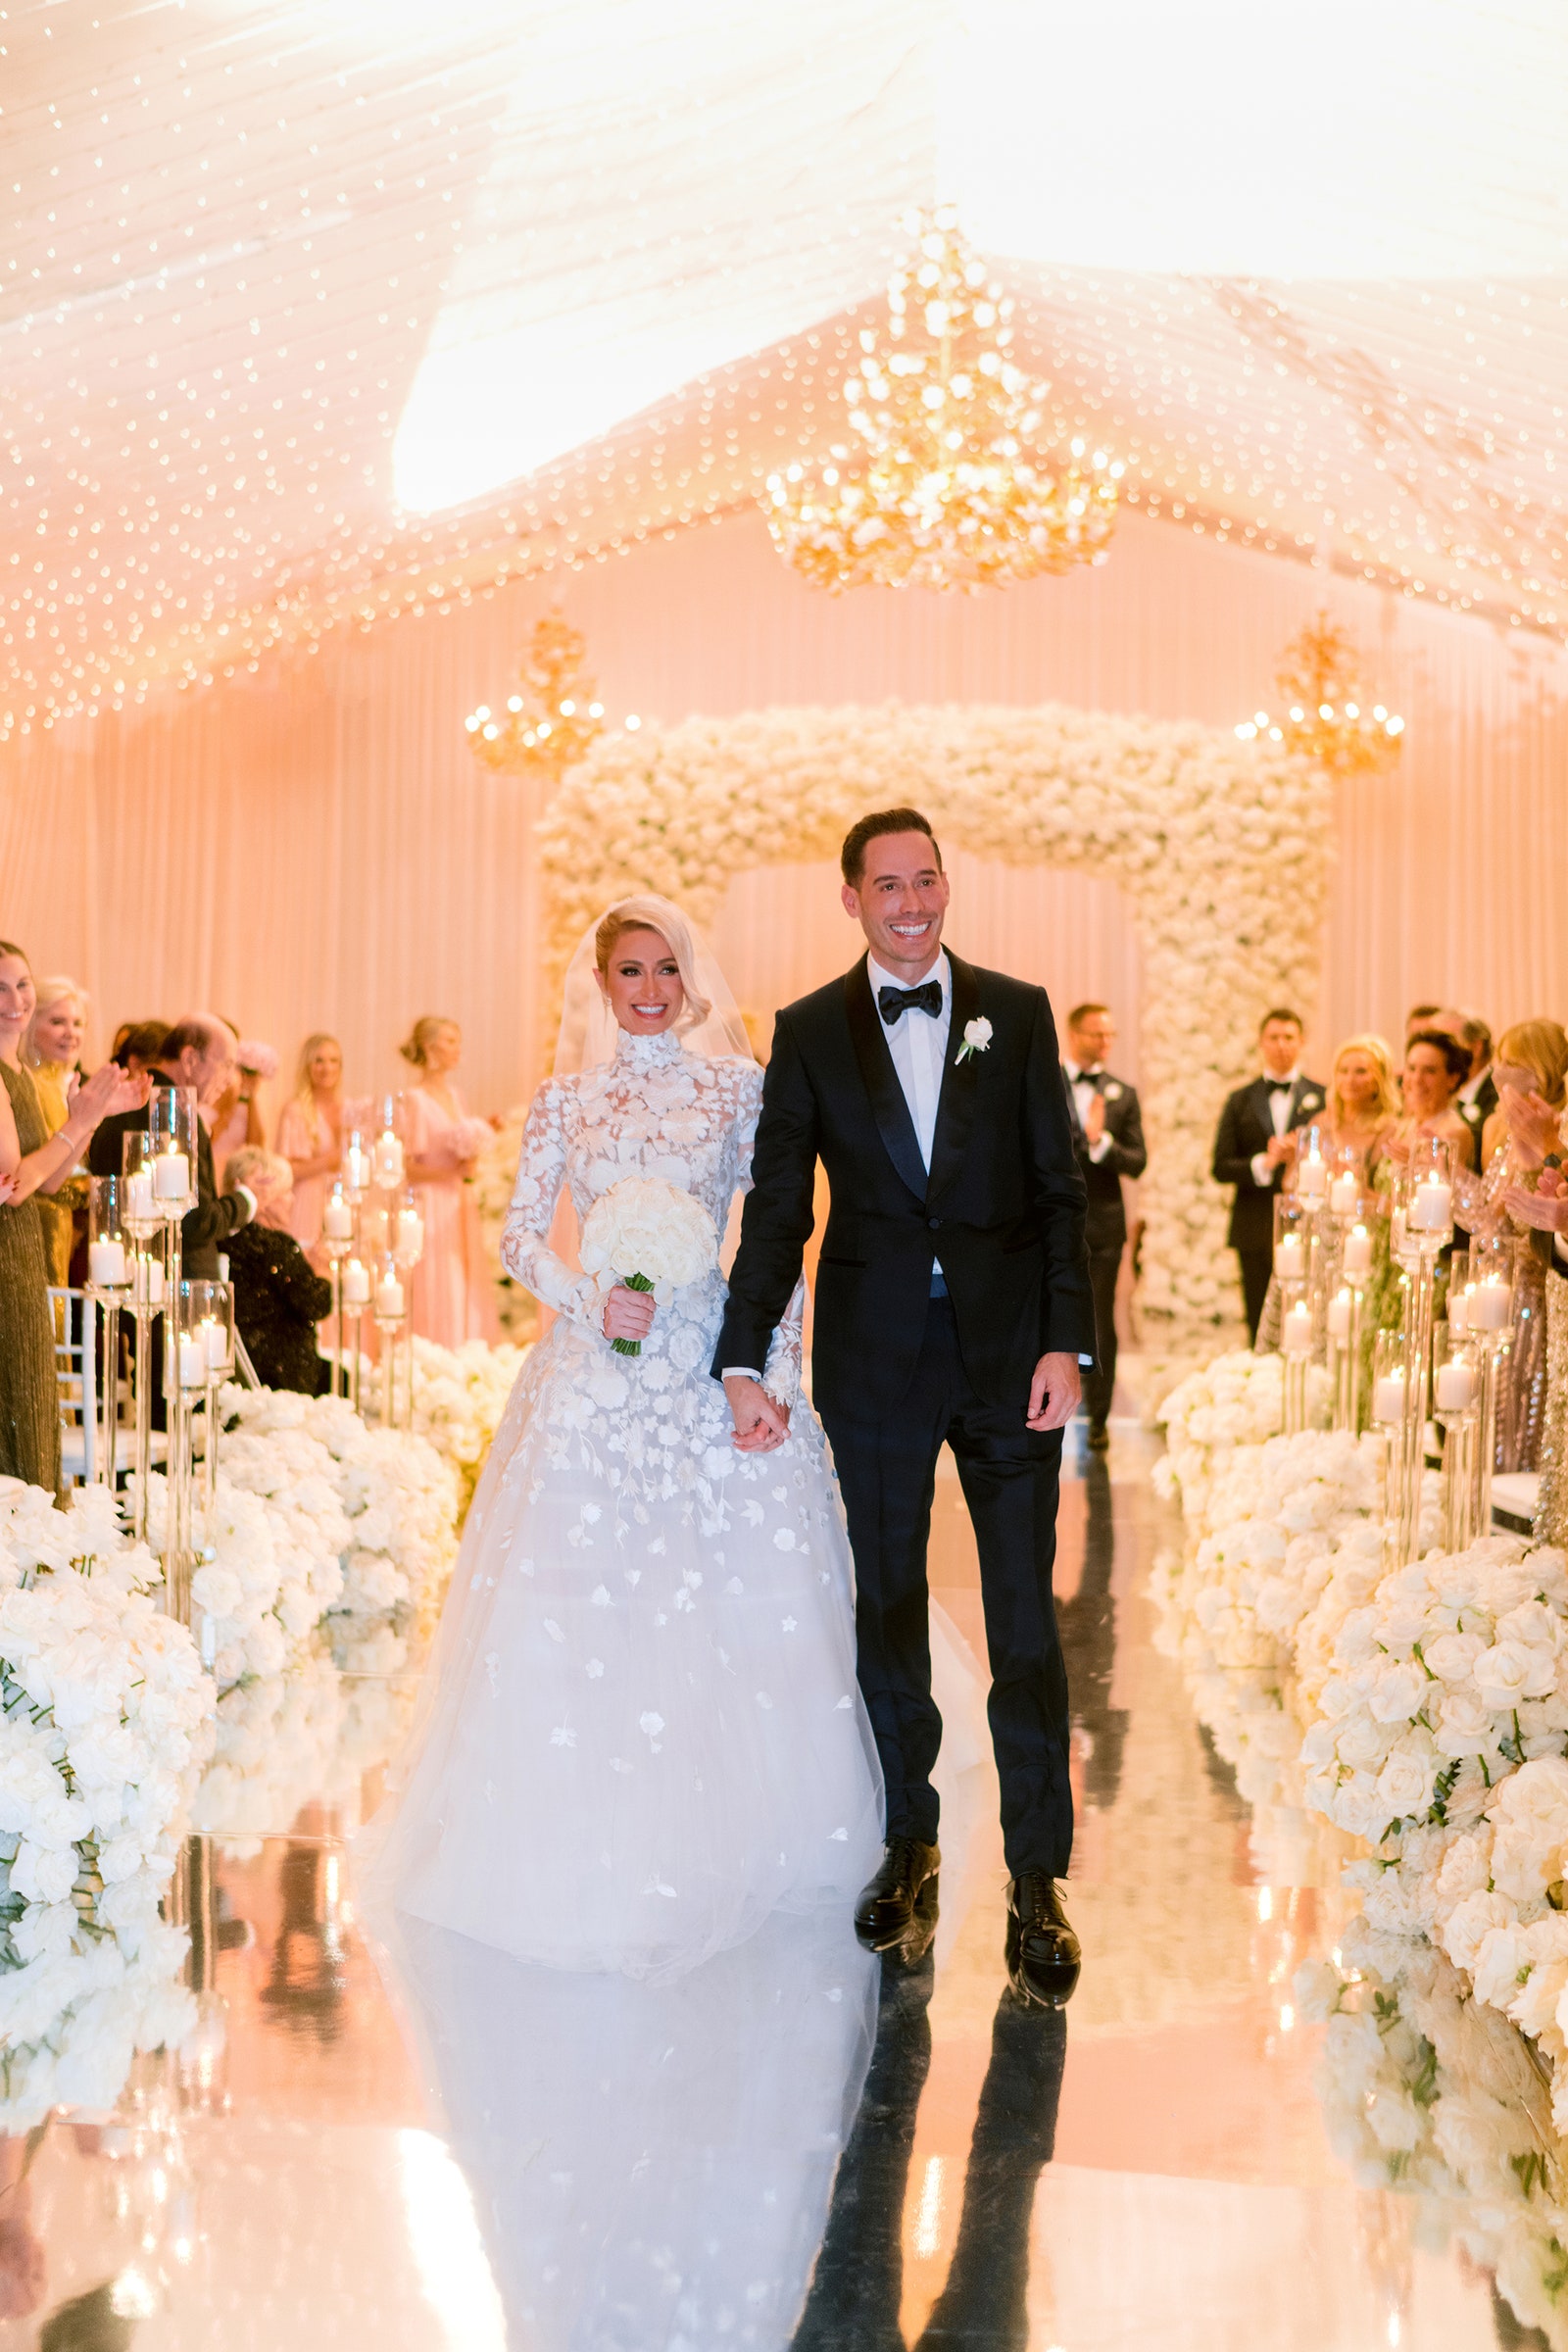 Cận cảnh đám cưới xa hoa, kéo dài suốt 3 ngày ở biệt thự triệu đô của Paris Hilton - Ảnh 1